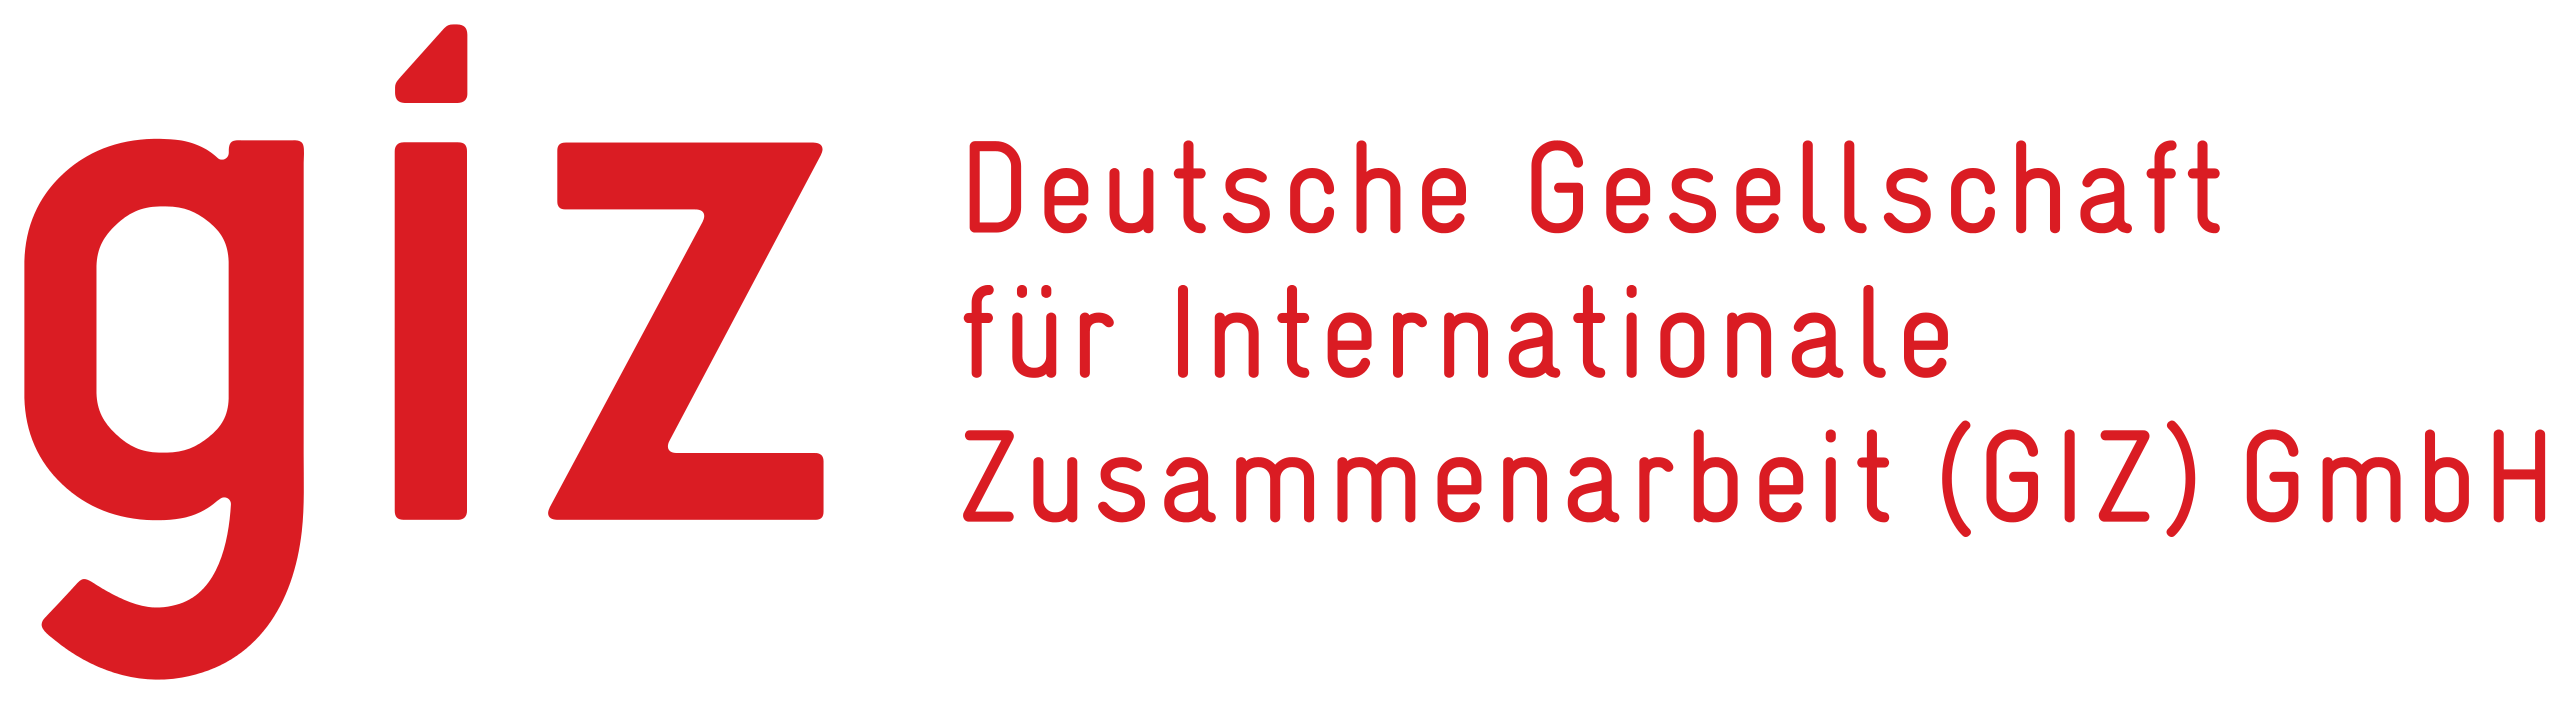 GIZ – Deutsche Gesellschaft für Internationale Zusammenarbeit